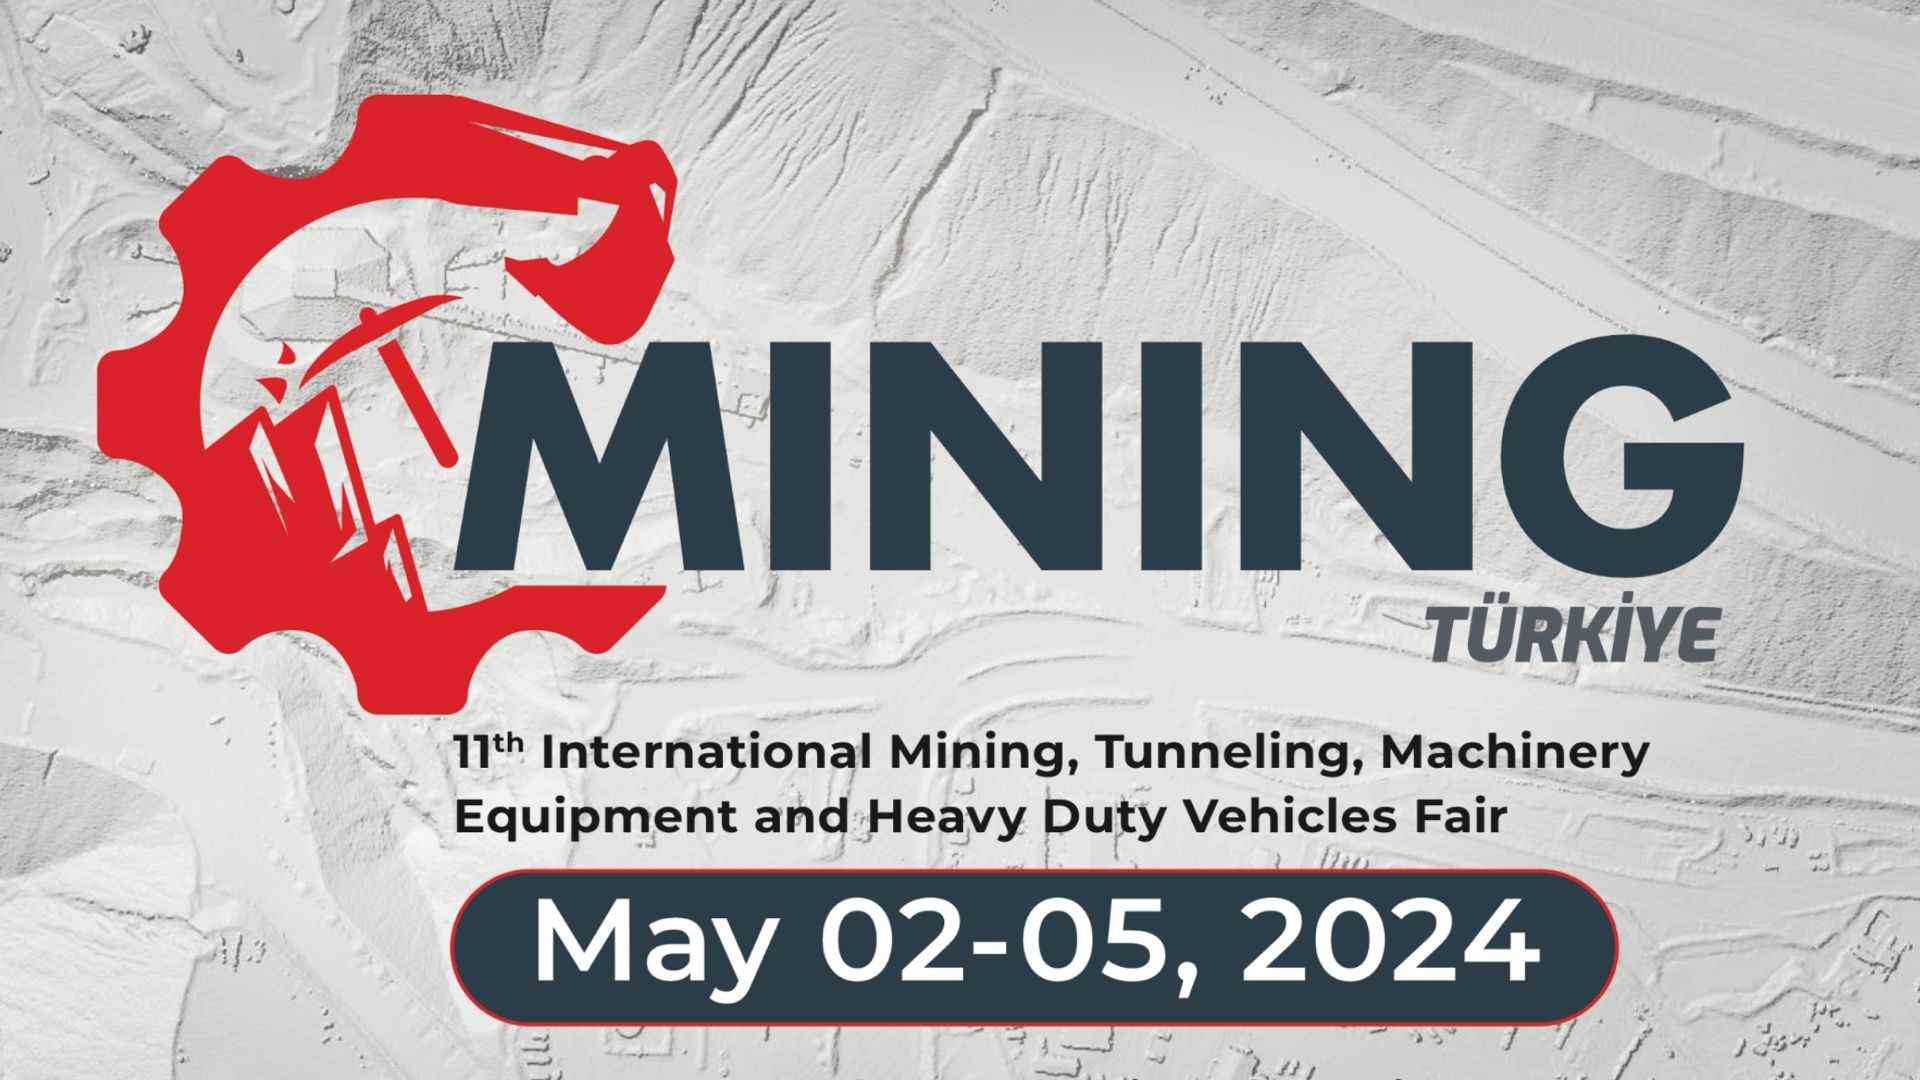 CNSME (proveedor de bombas de lodo) participará en la exposición Mining en Turquía en mayo de 2024